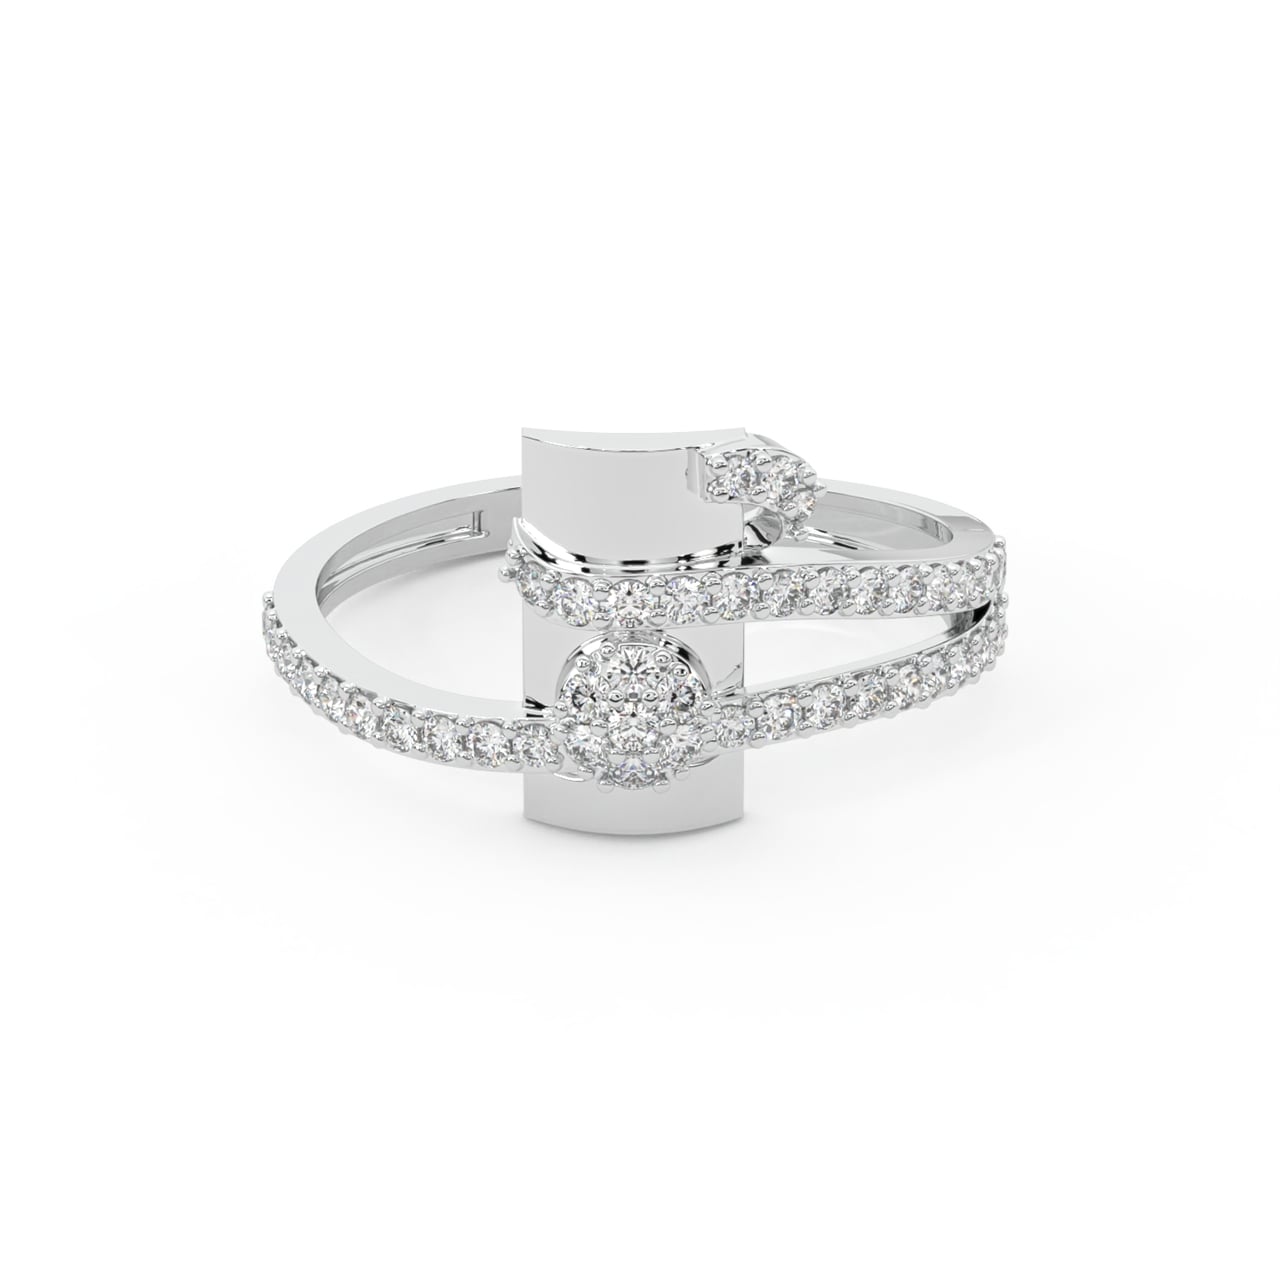 Henry Round Diamond Engagement Ring